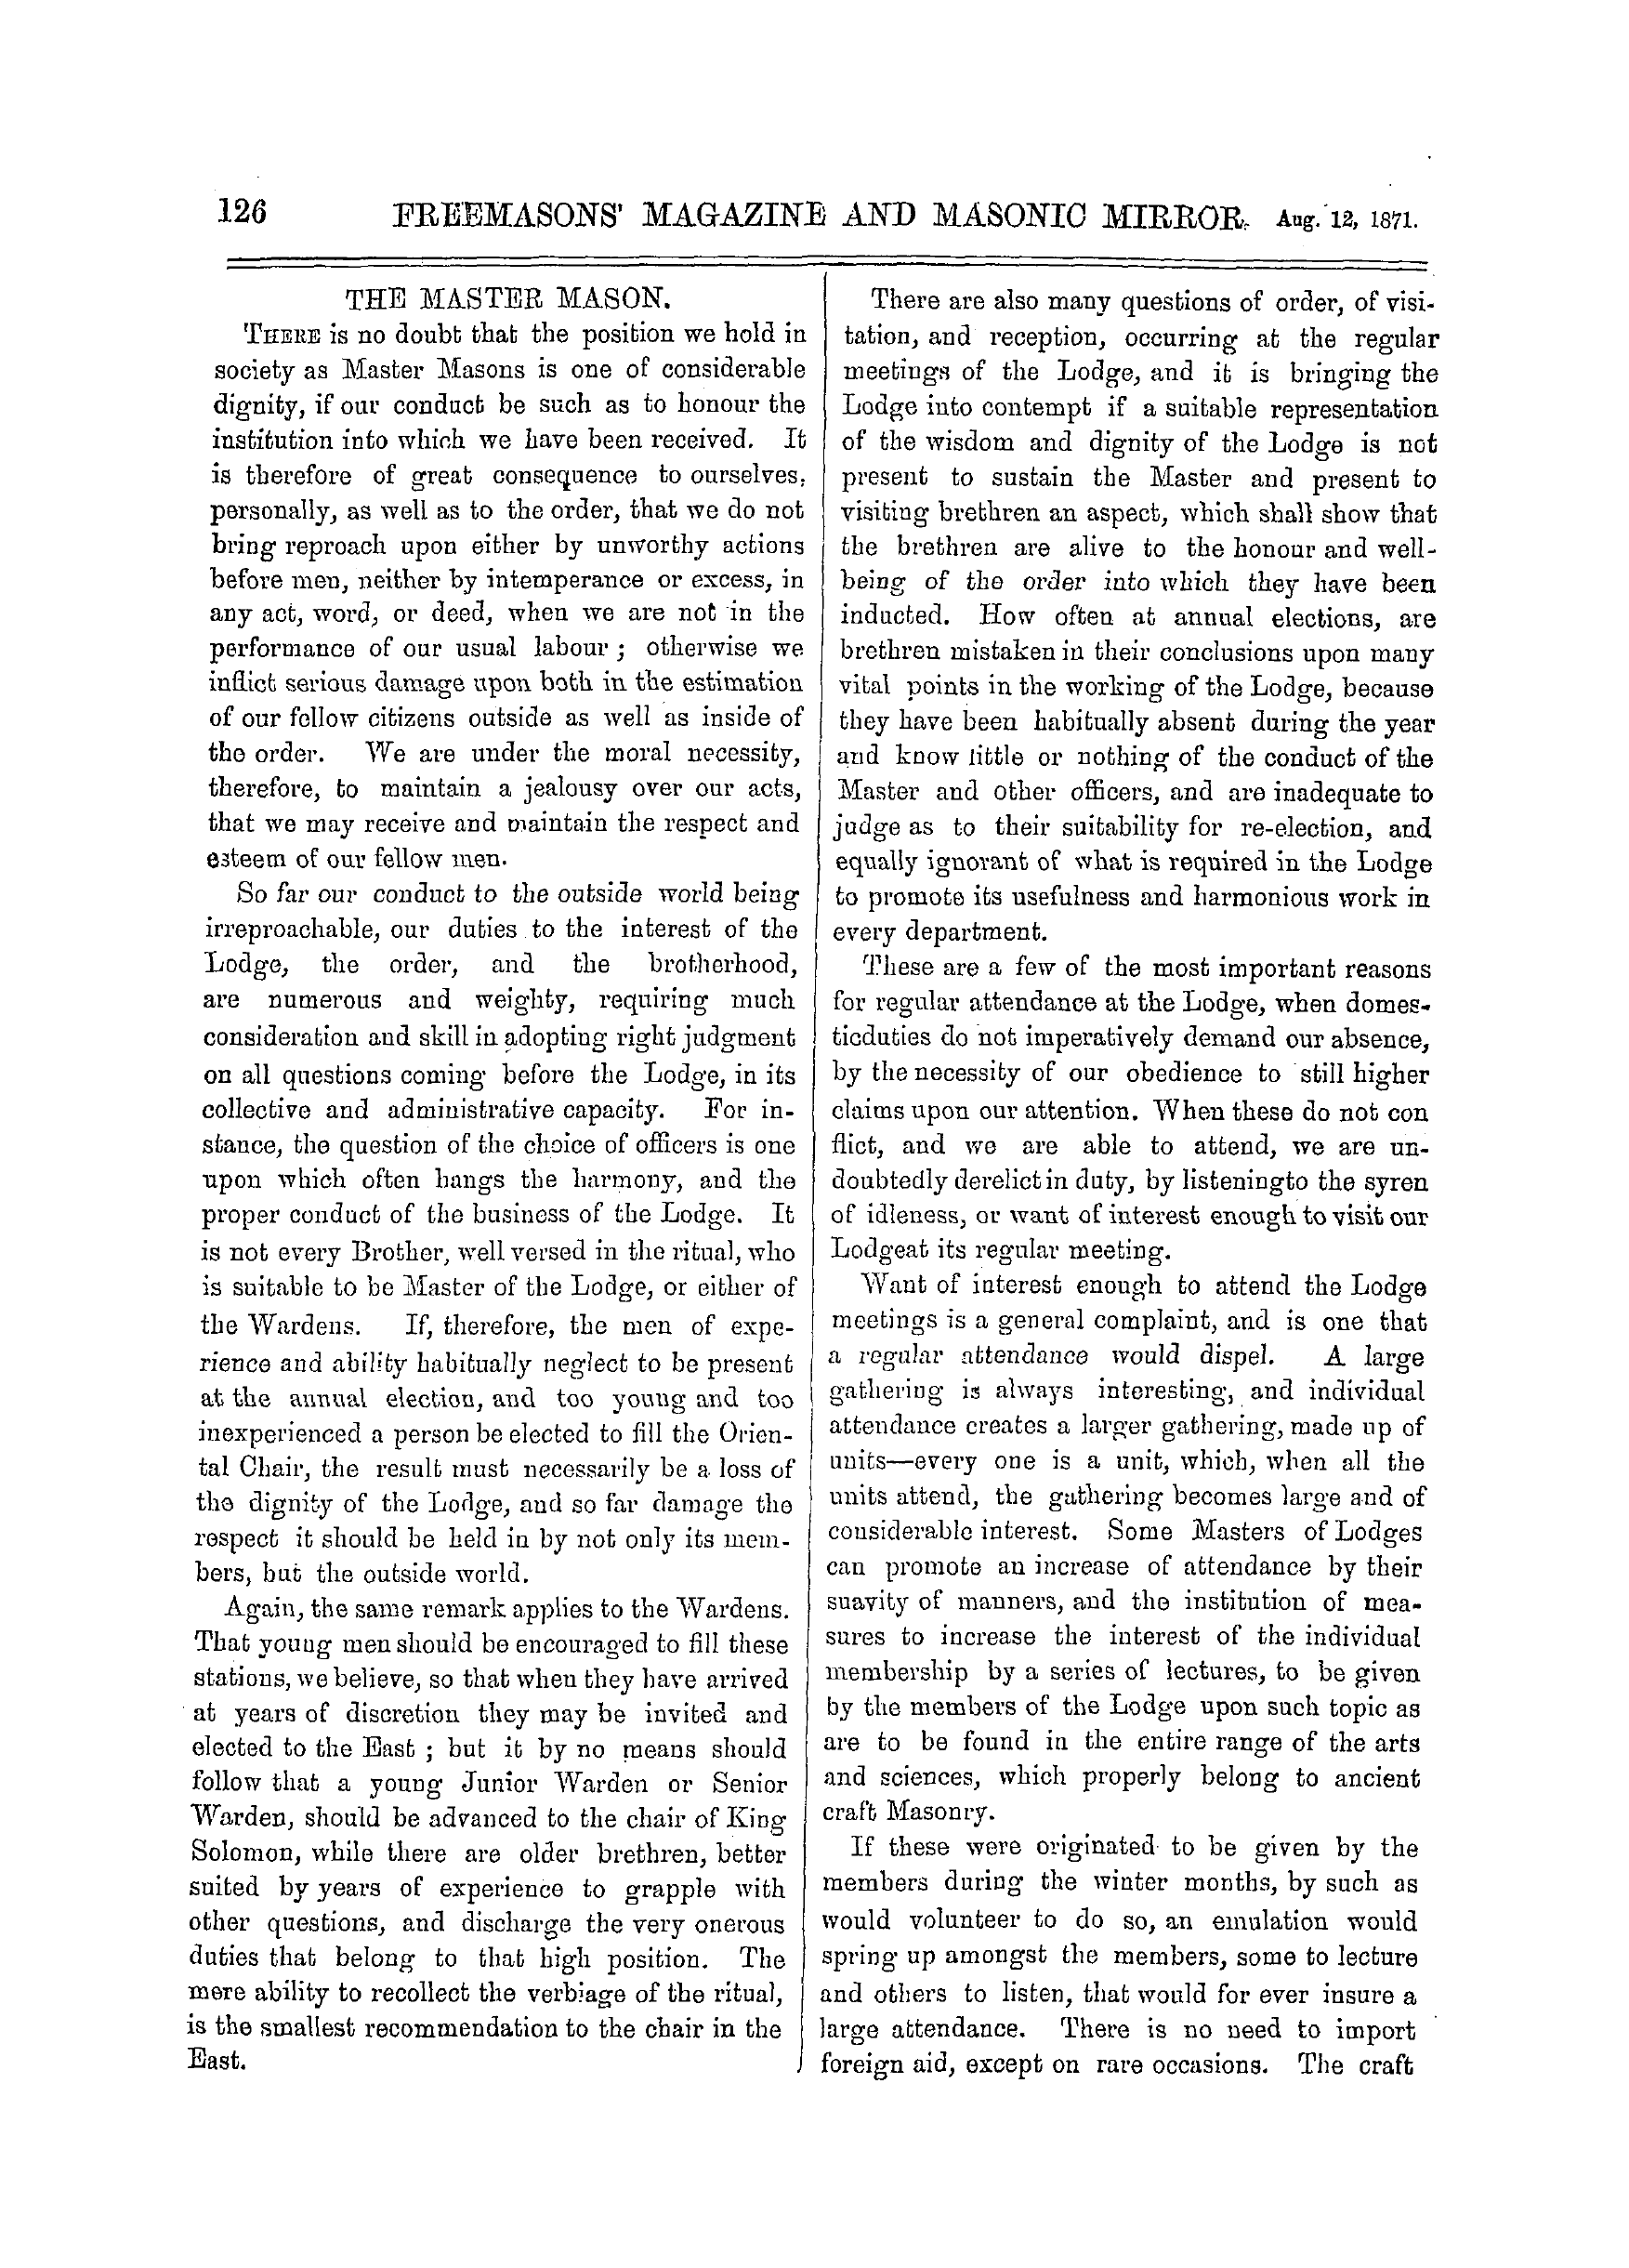 The Freemasons' Monthly Magazine: 1871-08-12 - The Master Mason.